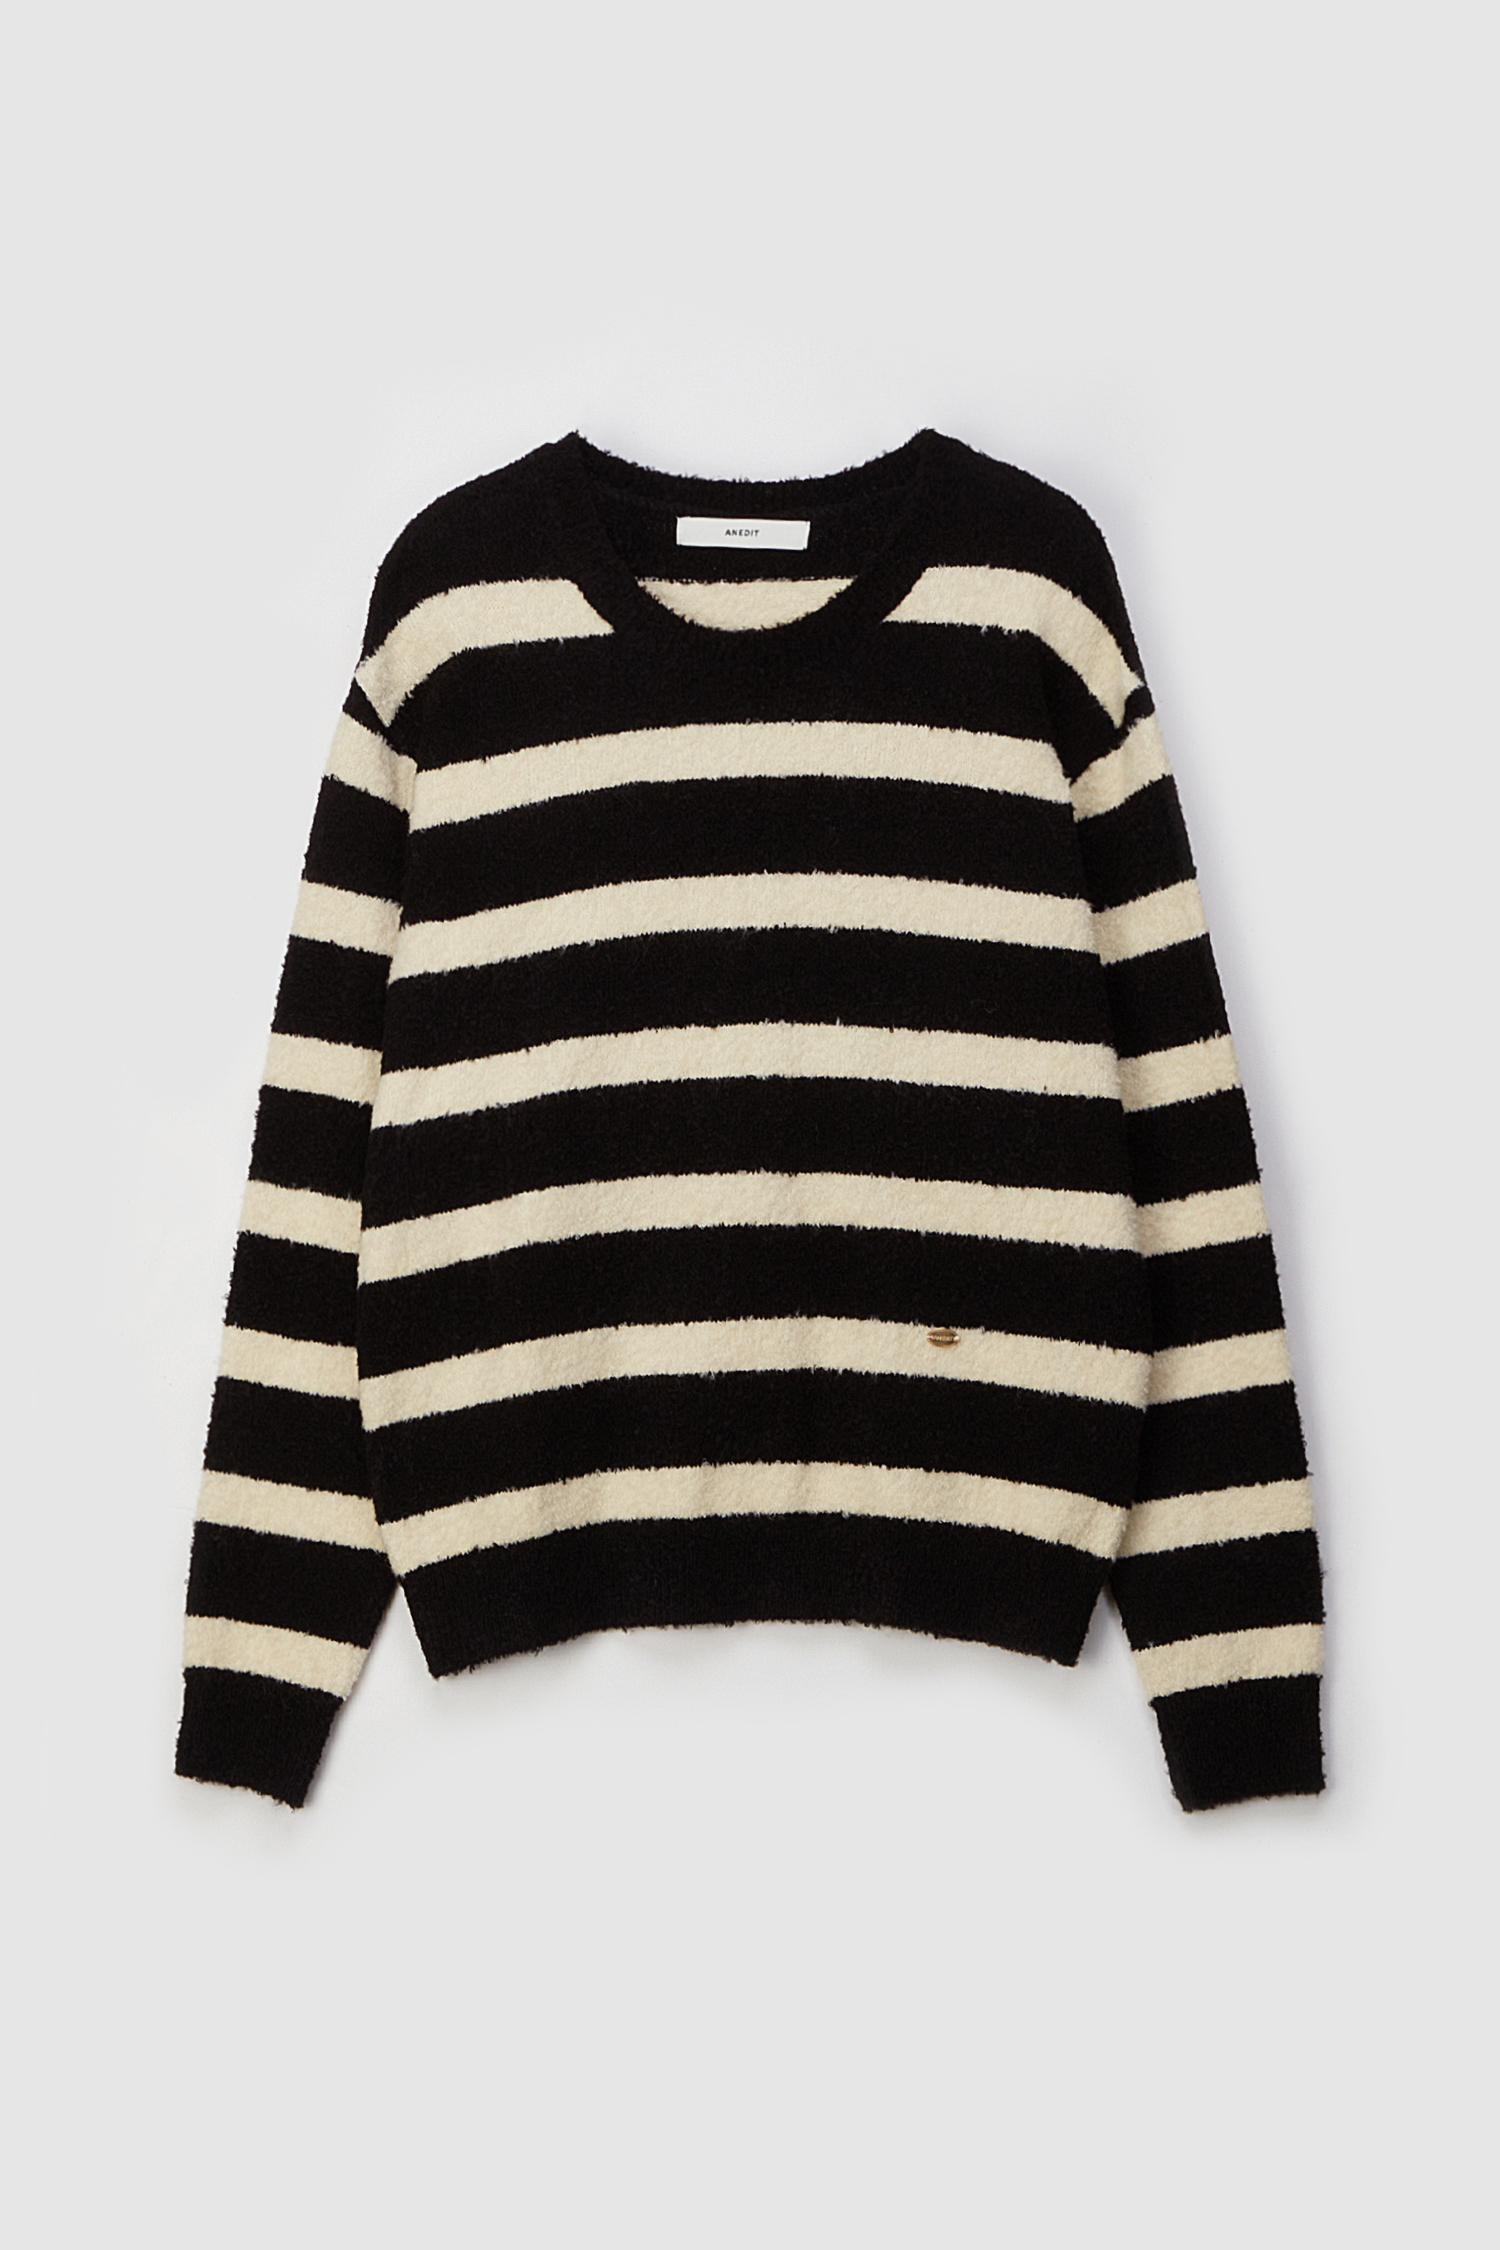 T Stripe Boucle Wool Knit_Ivory Black